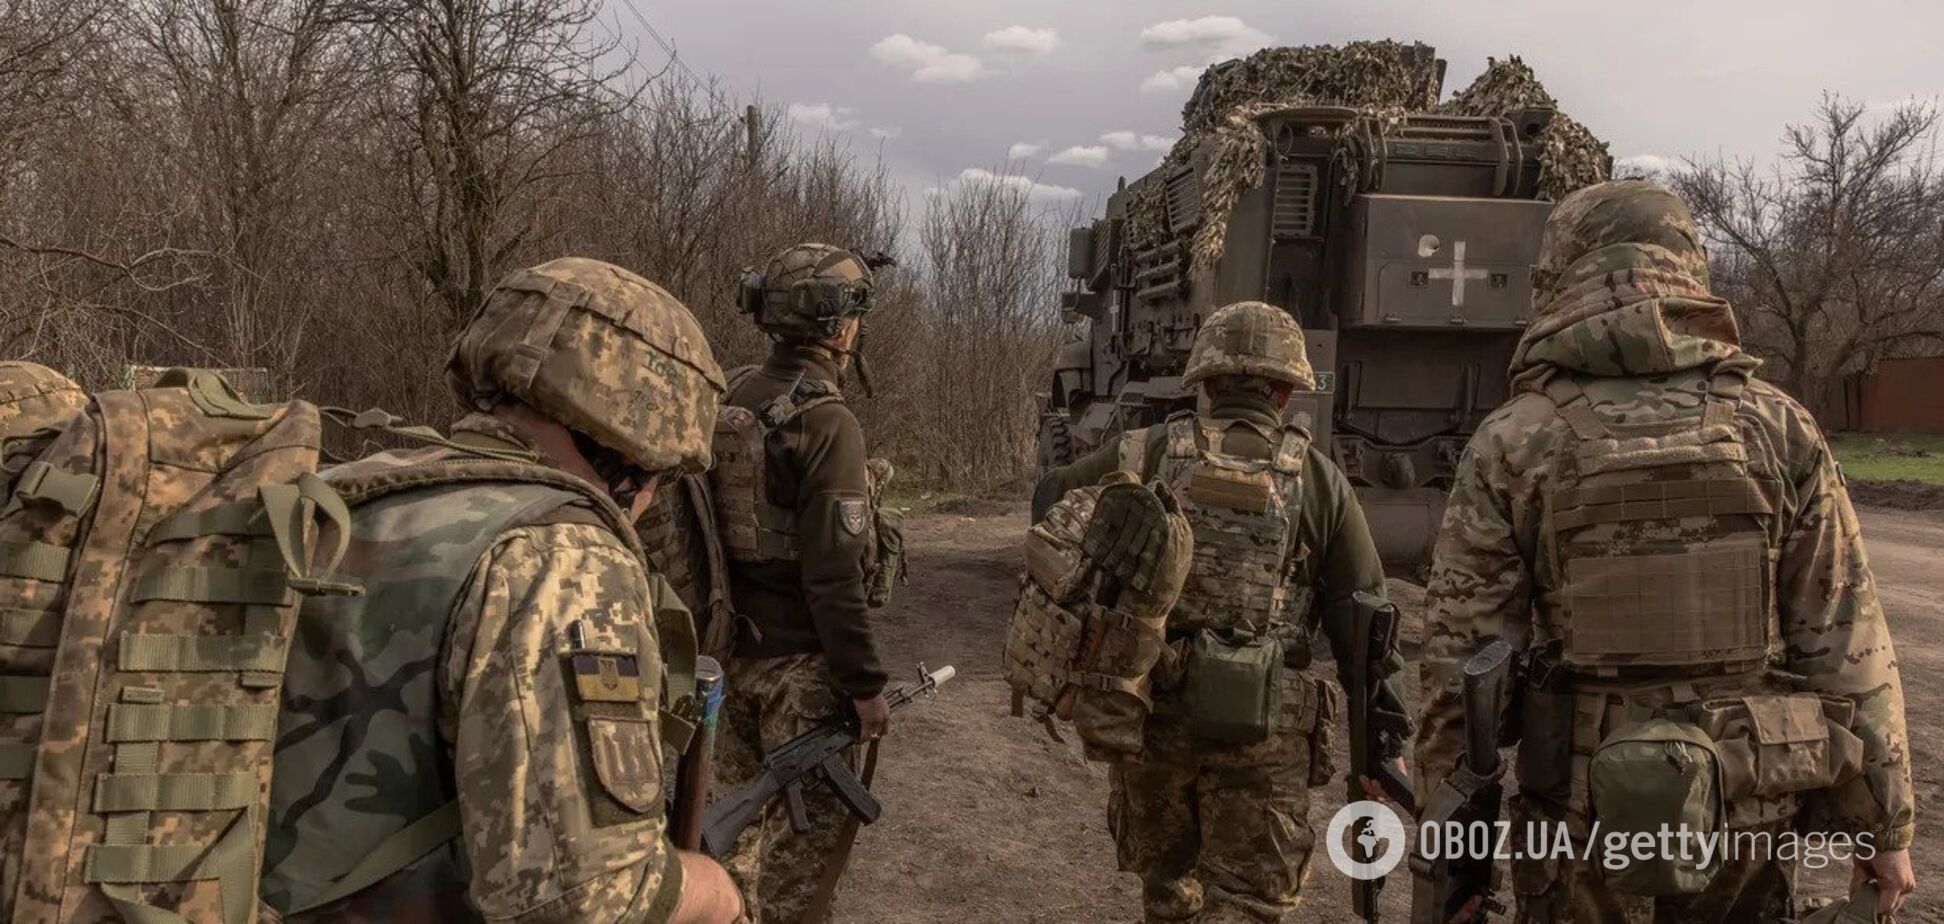 Ворог може активізувати операції: в ISW оцінили загрози для української оборони під Авдіївкою та Часовим Яром. Карта